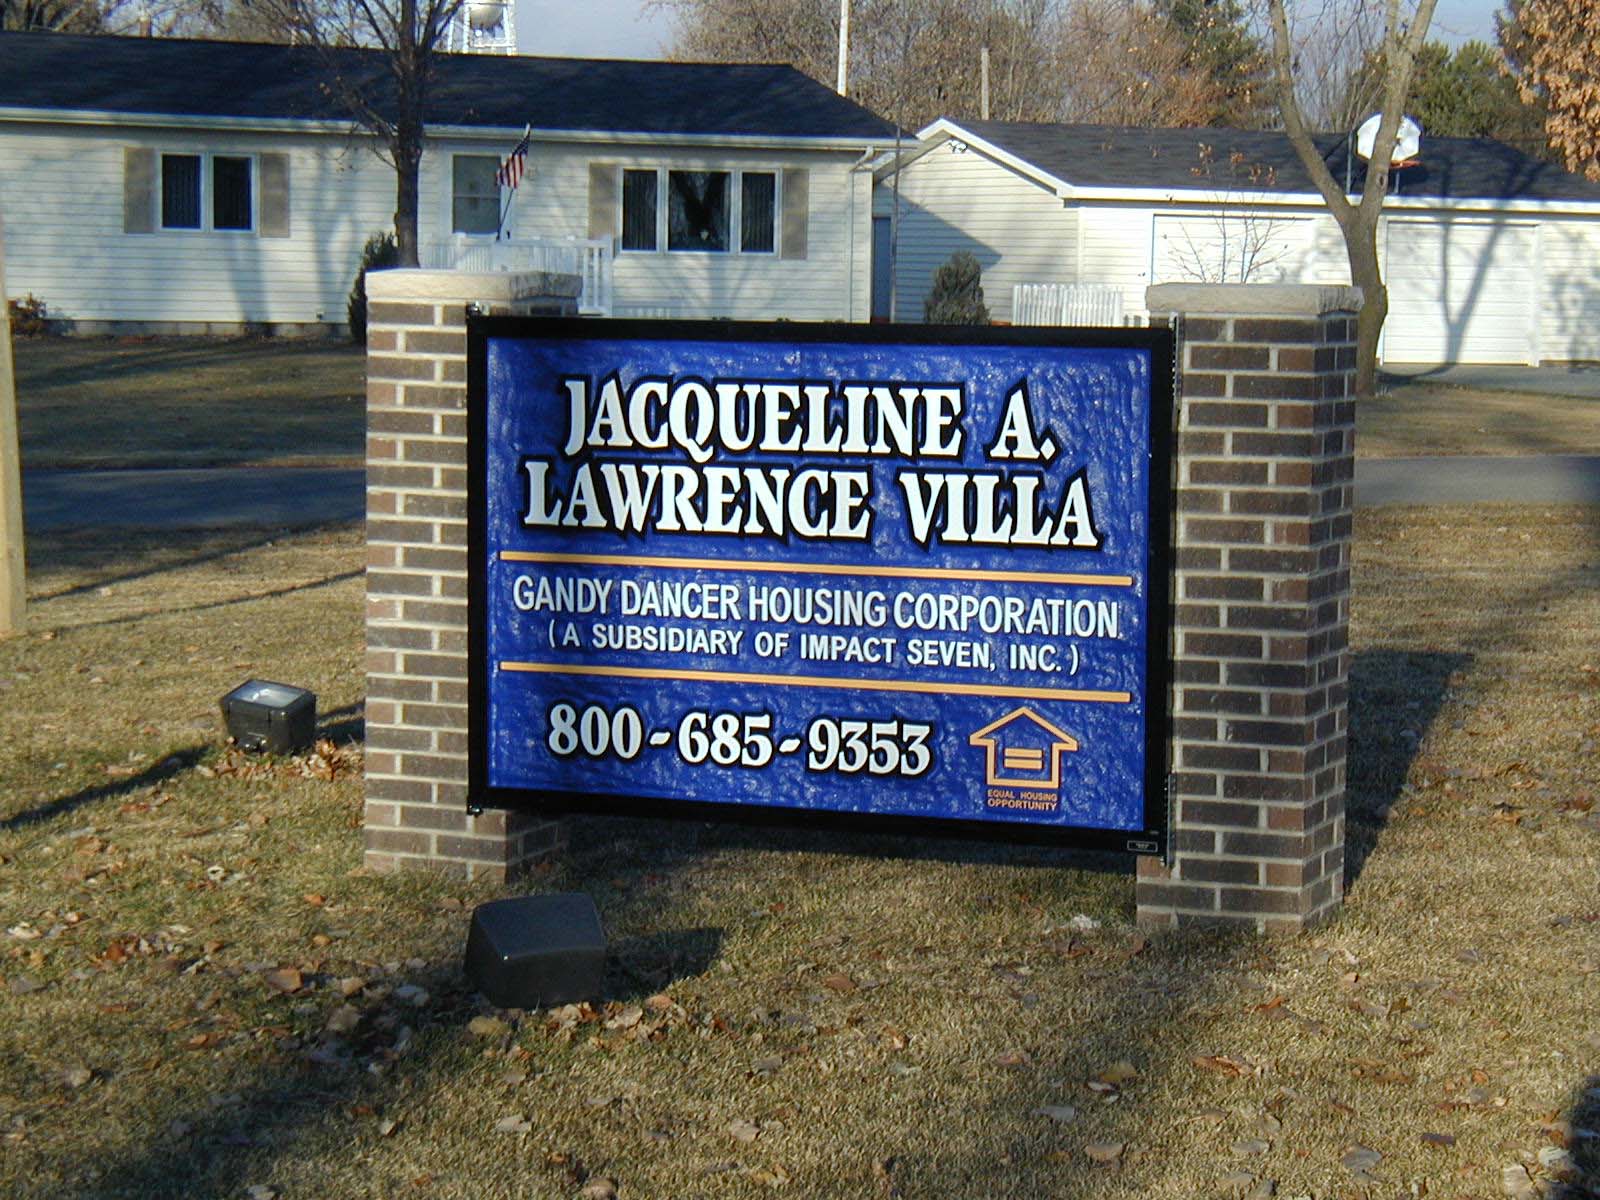 JACQUELINE A. LAWRENCE VILLA